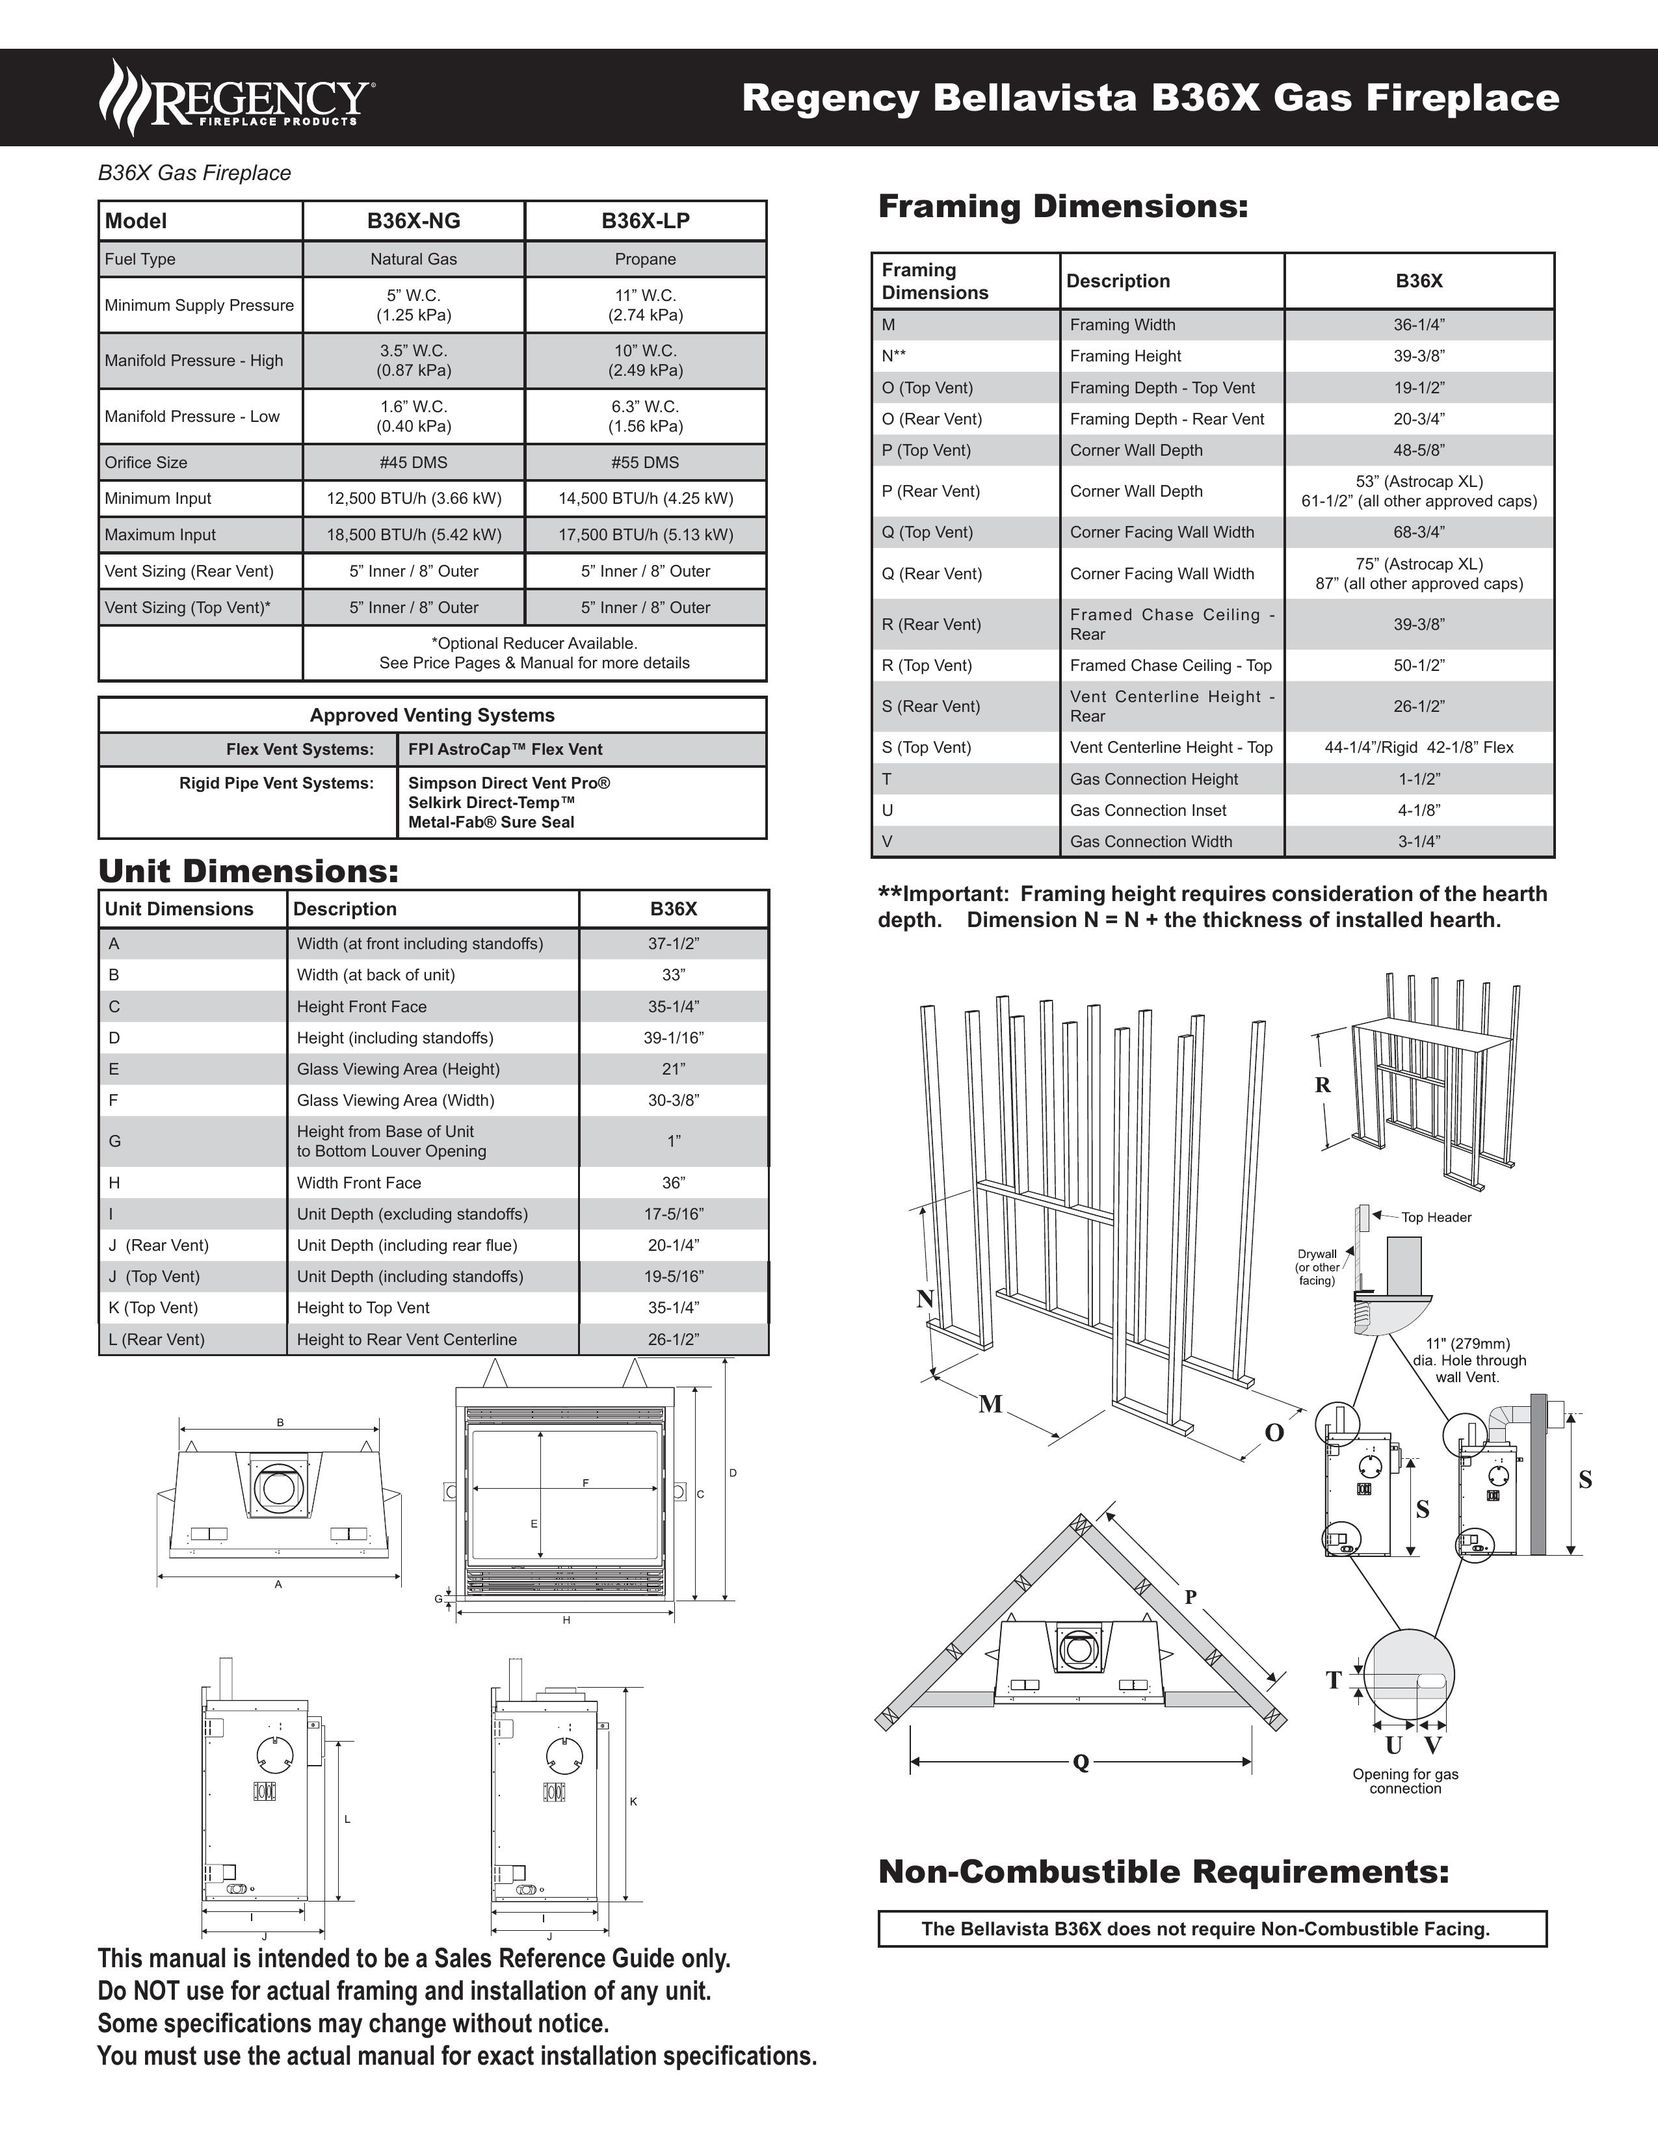 Regency B36X Indoor Fireplace User Manual